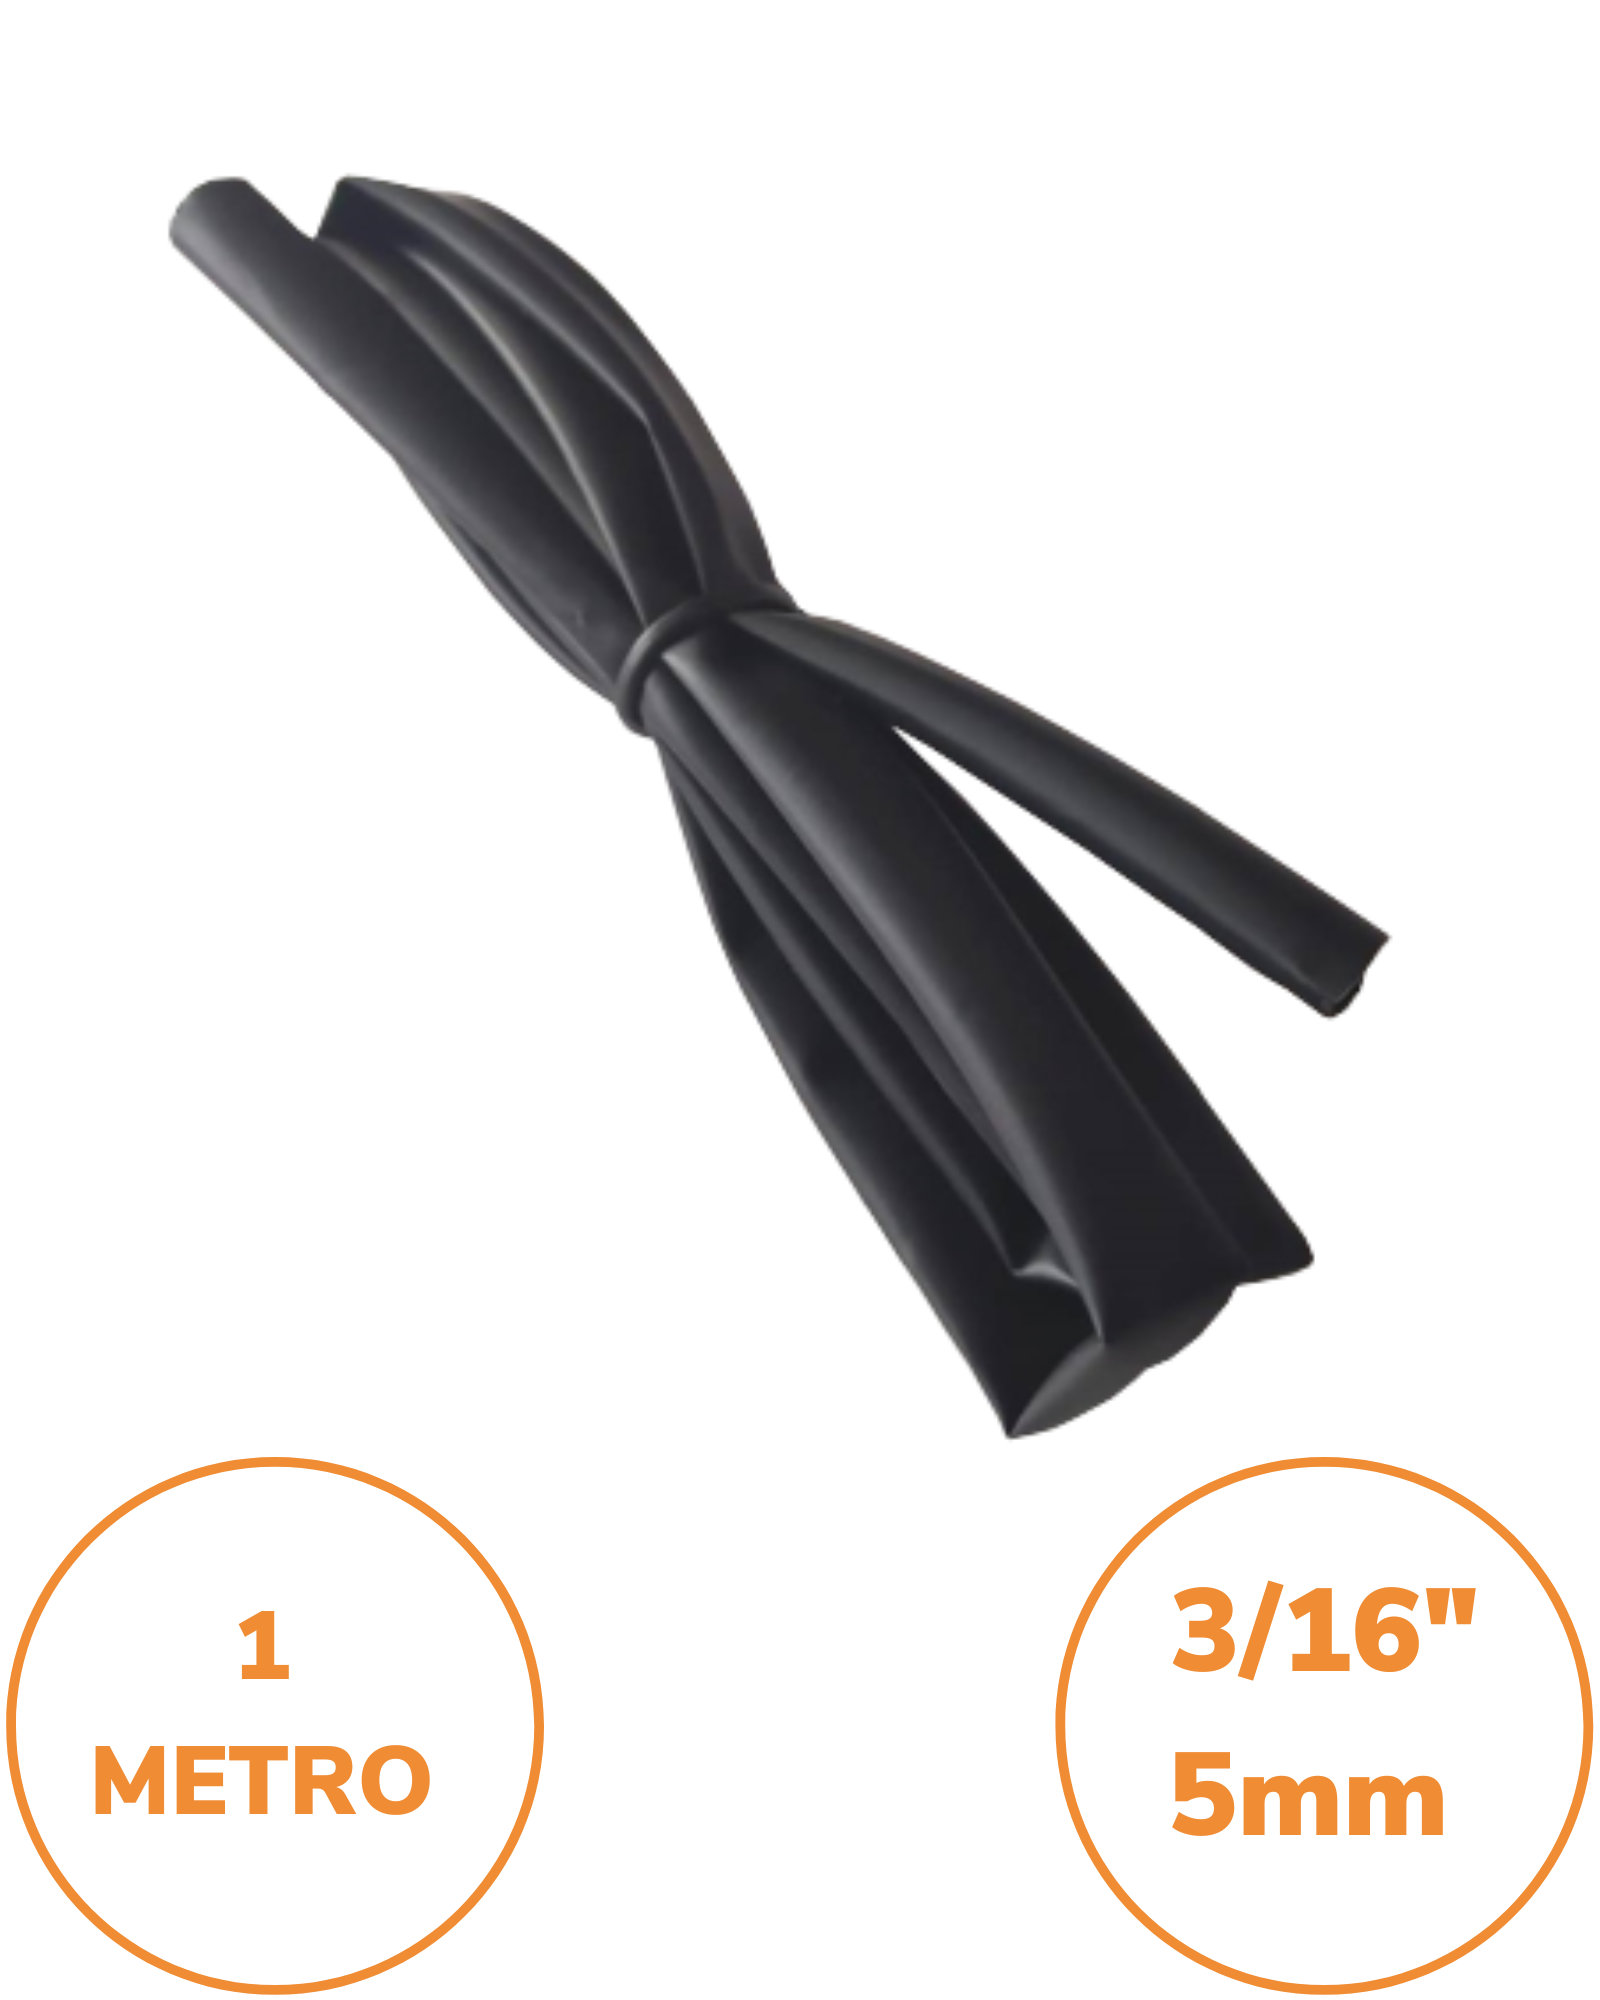 3M™ Tubo Termocontraíble para cable pesado, 1 kV, 400-625 mm2, 25-76 mm de  diámetro sobre la cubierta externa, 1.20 mts de longitud. 20 unidades por  caja